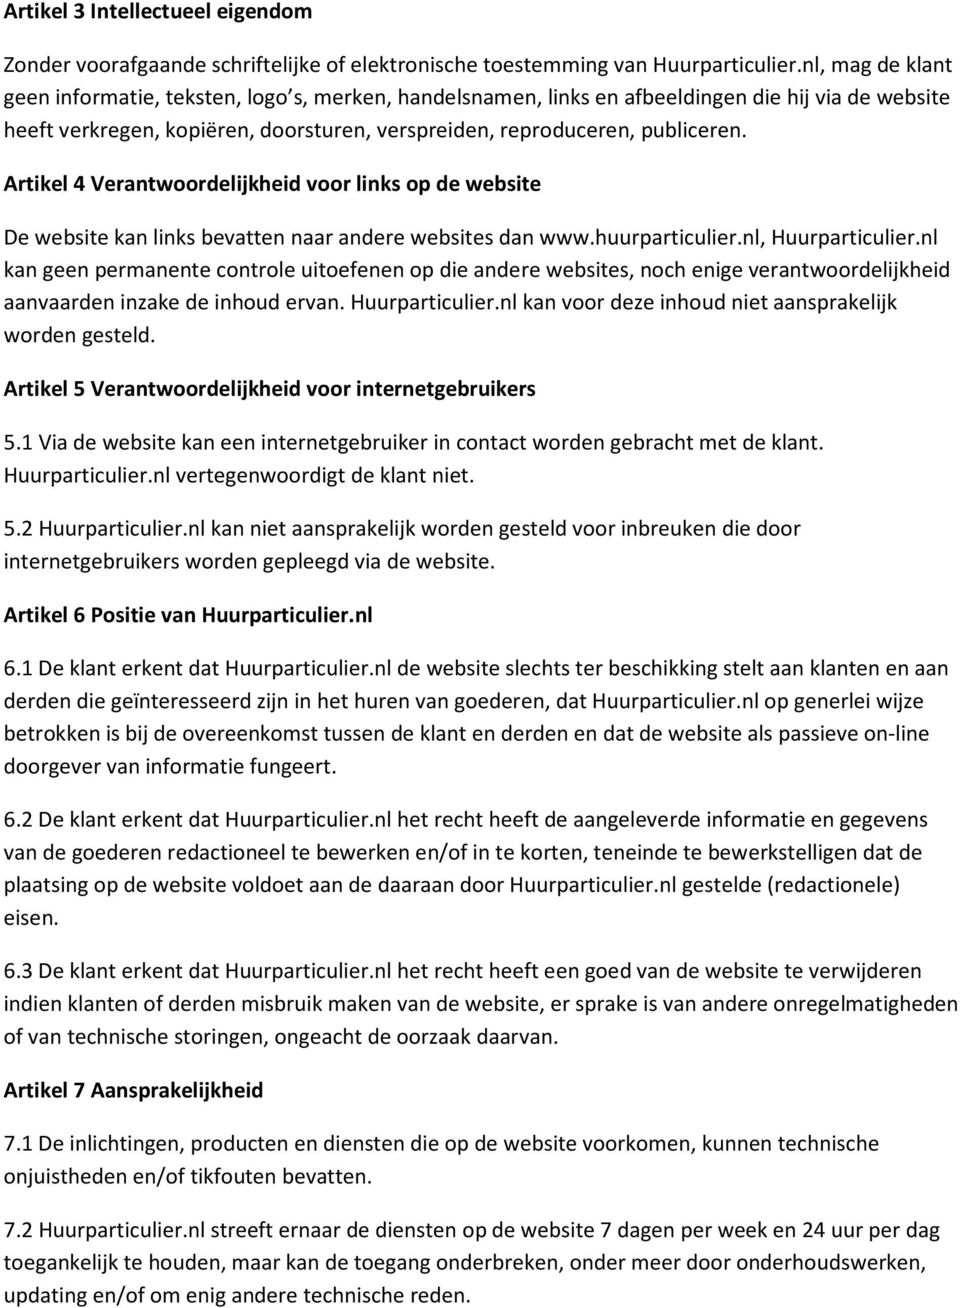 Artikel 4 Verantwoordelijkheid voor links op de website De website kan links bevatten naar andere websites dan www.huurparticulier.nl, Huurparticulier.